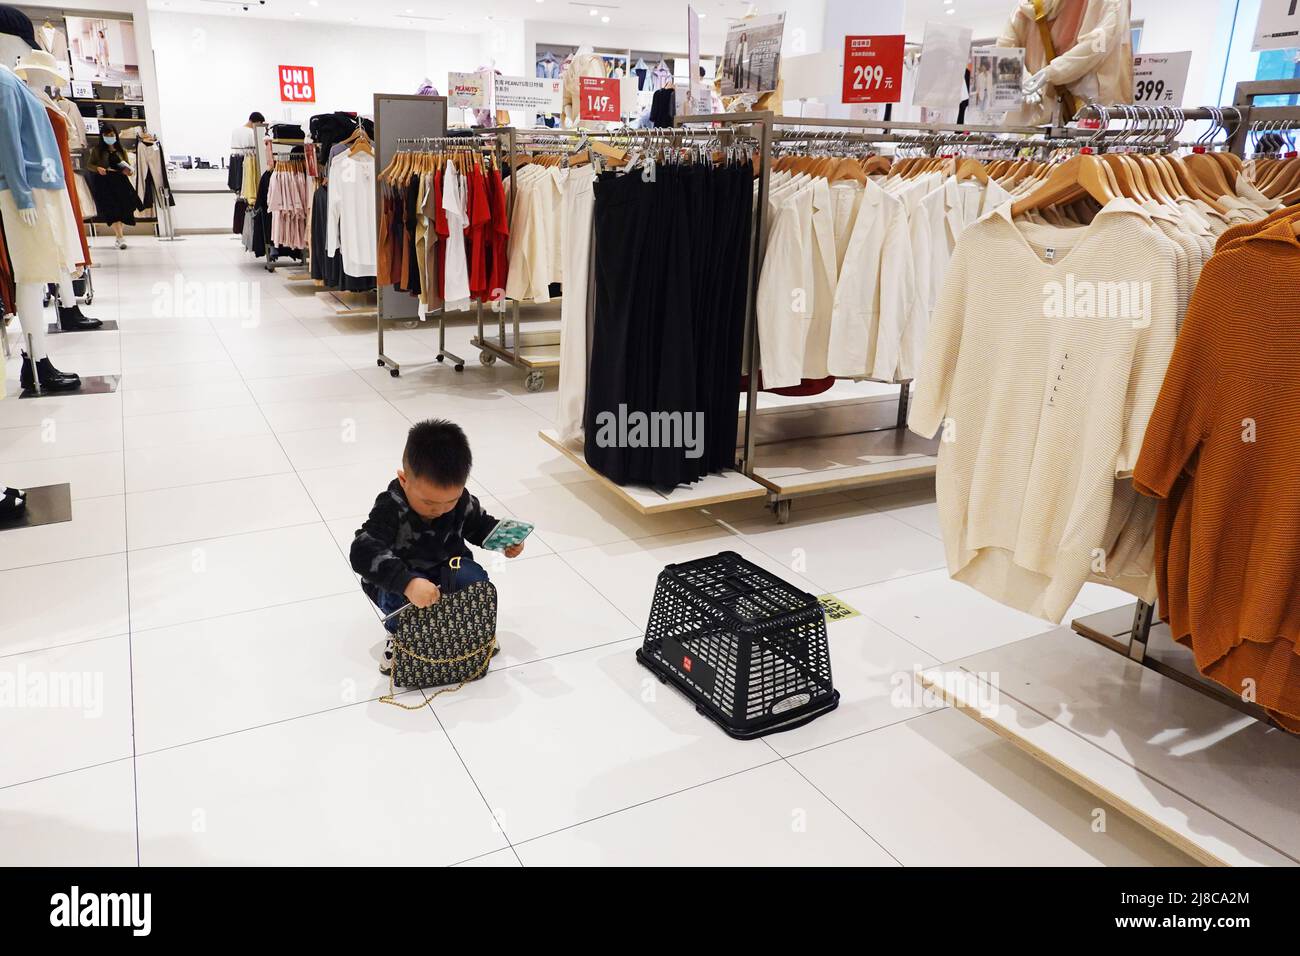 Un enfant joue dans un magasin de vêtements Uniqlo Photo Stock - Alamy